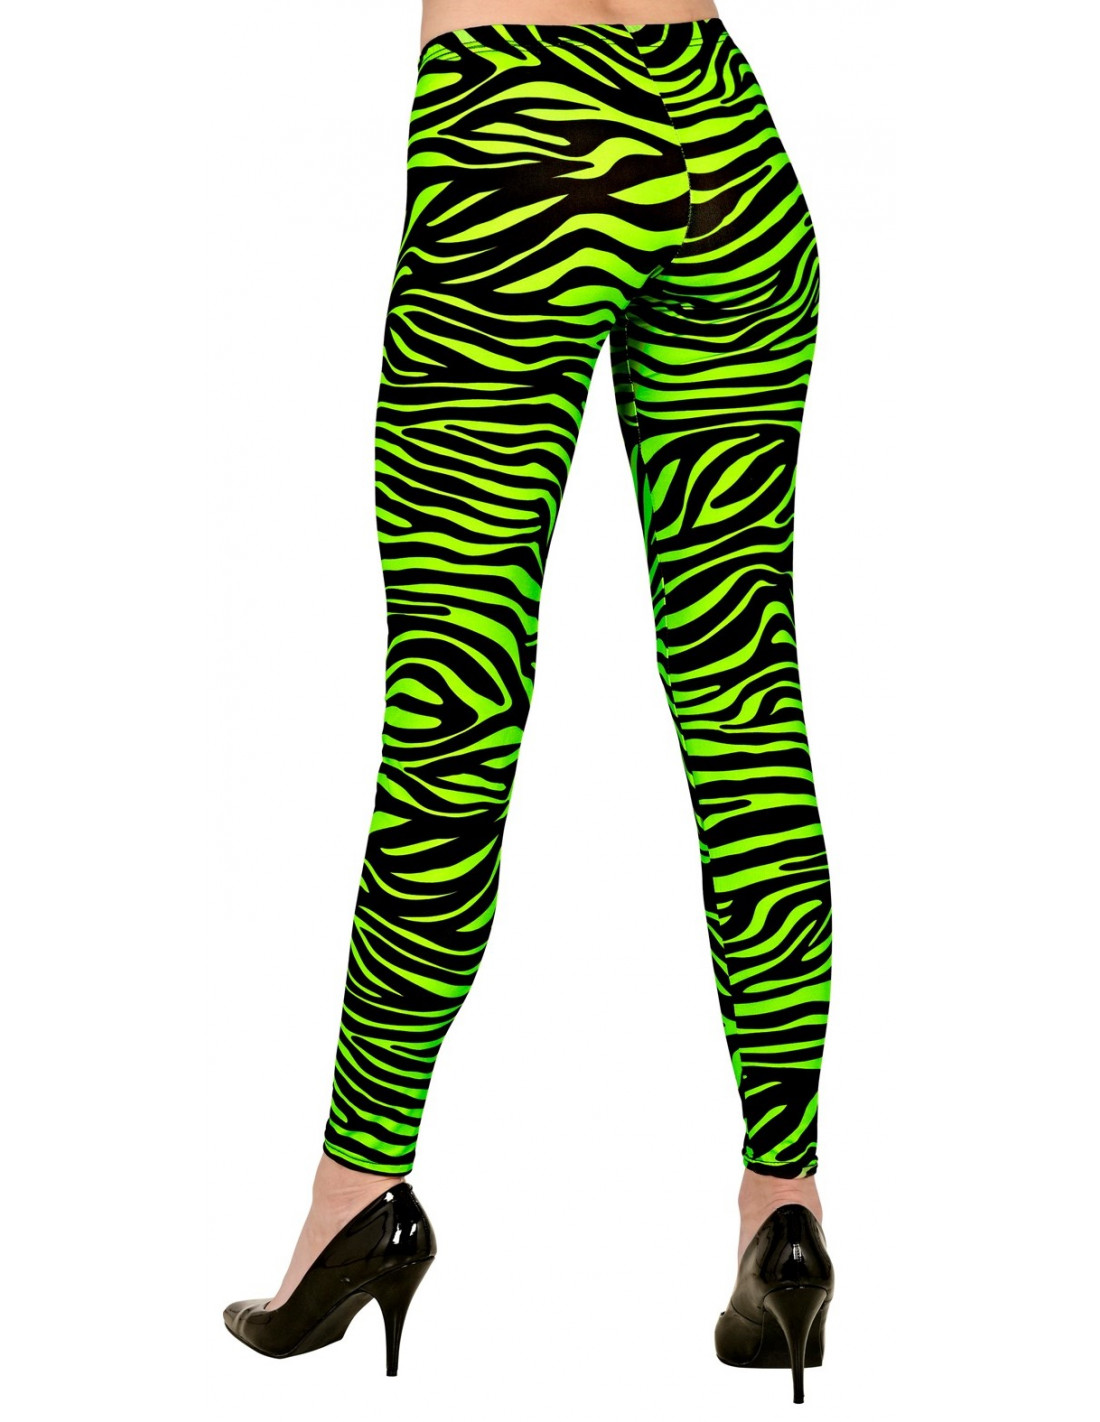 Leggins Años 80 Estampado Animal Verde Talla S-M. Tutús, medias y leggins  de disfraz . La Superpapelería